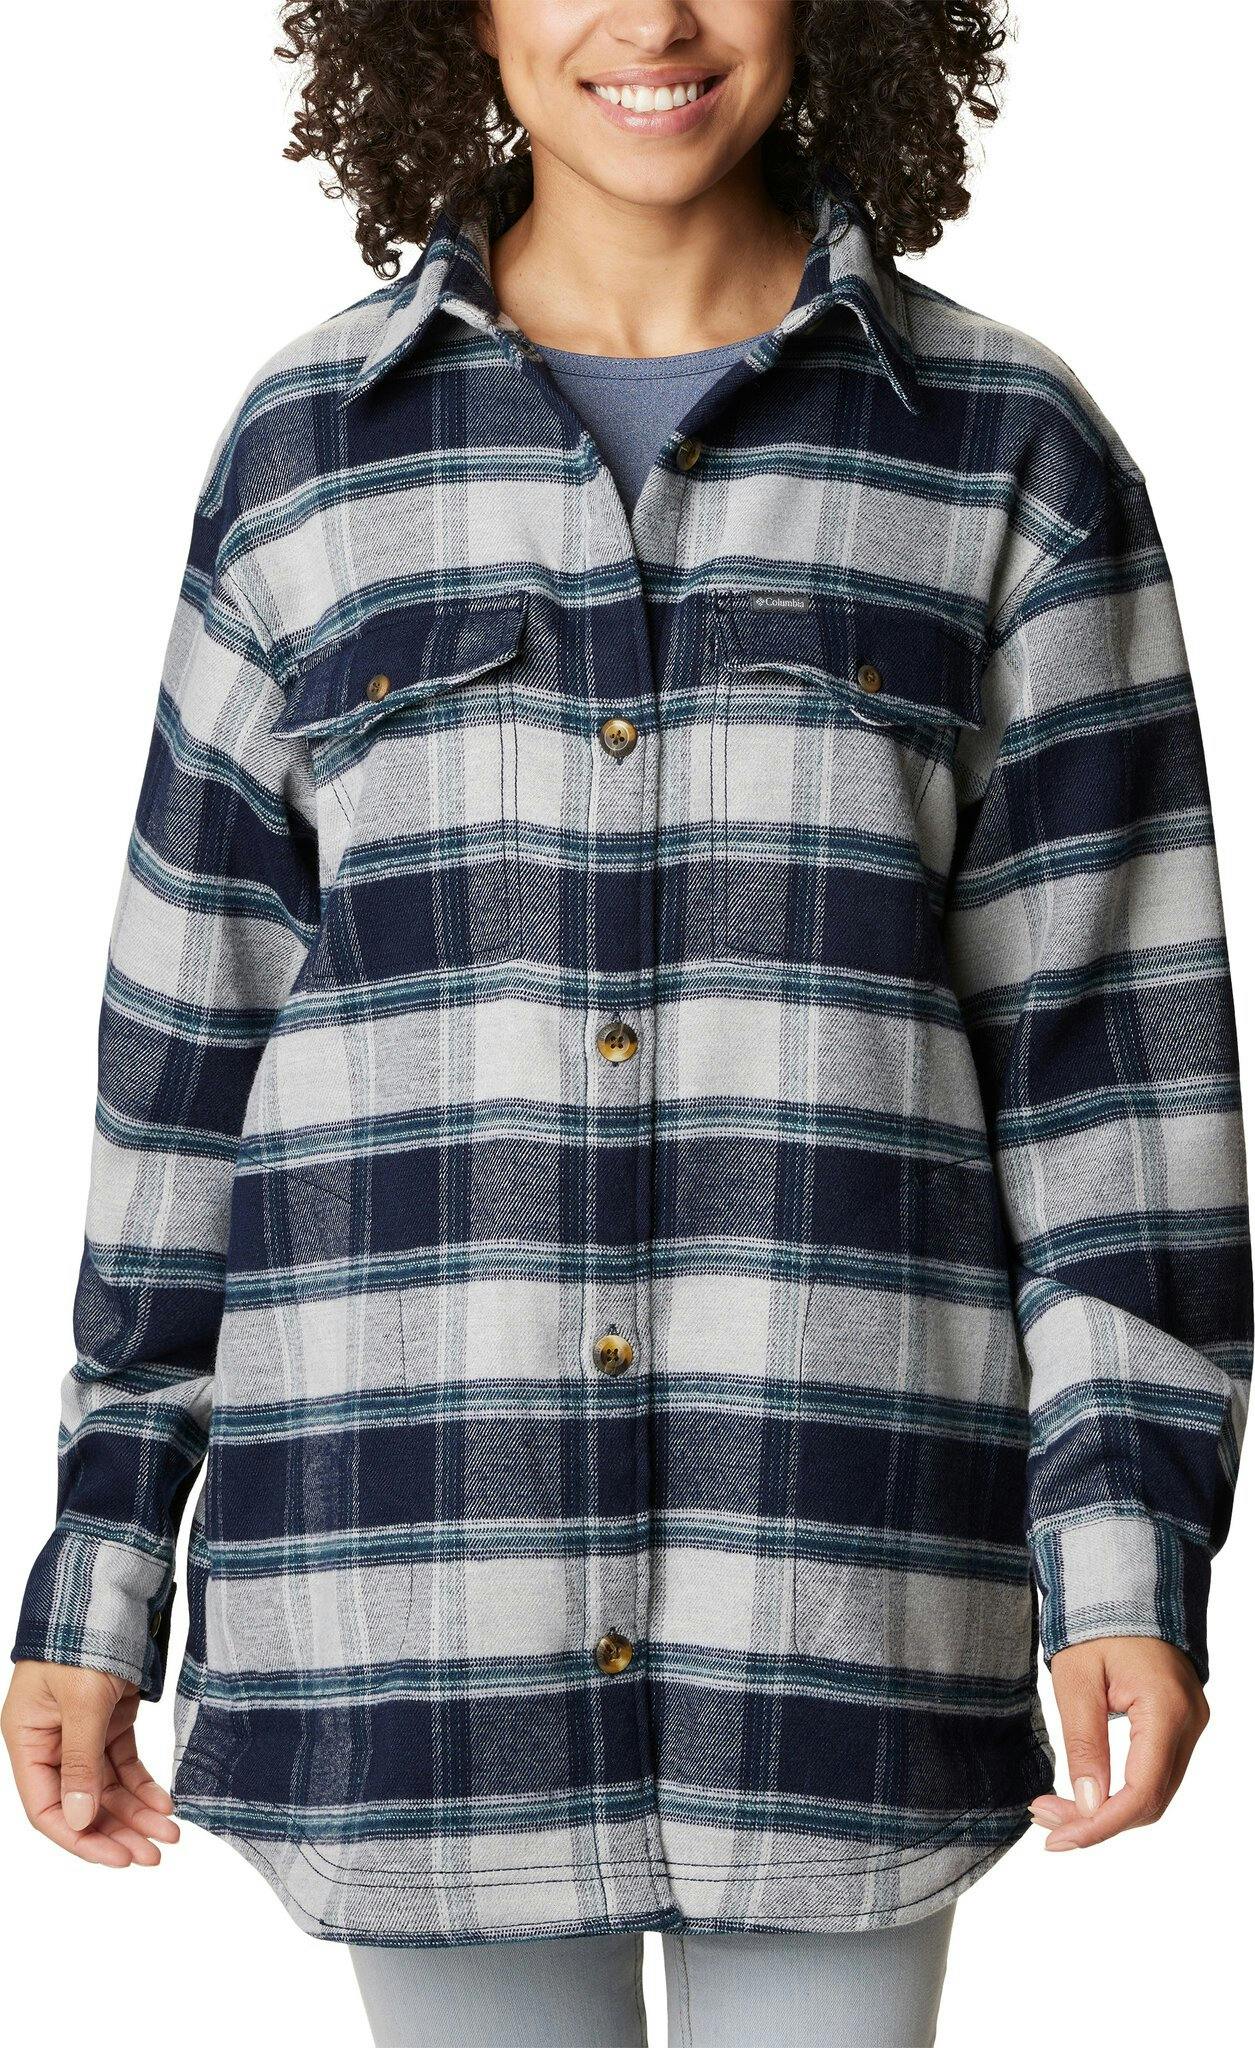 Product image for Calico Basin Shirt Jacket - Women's